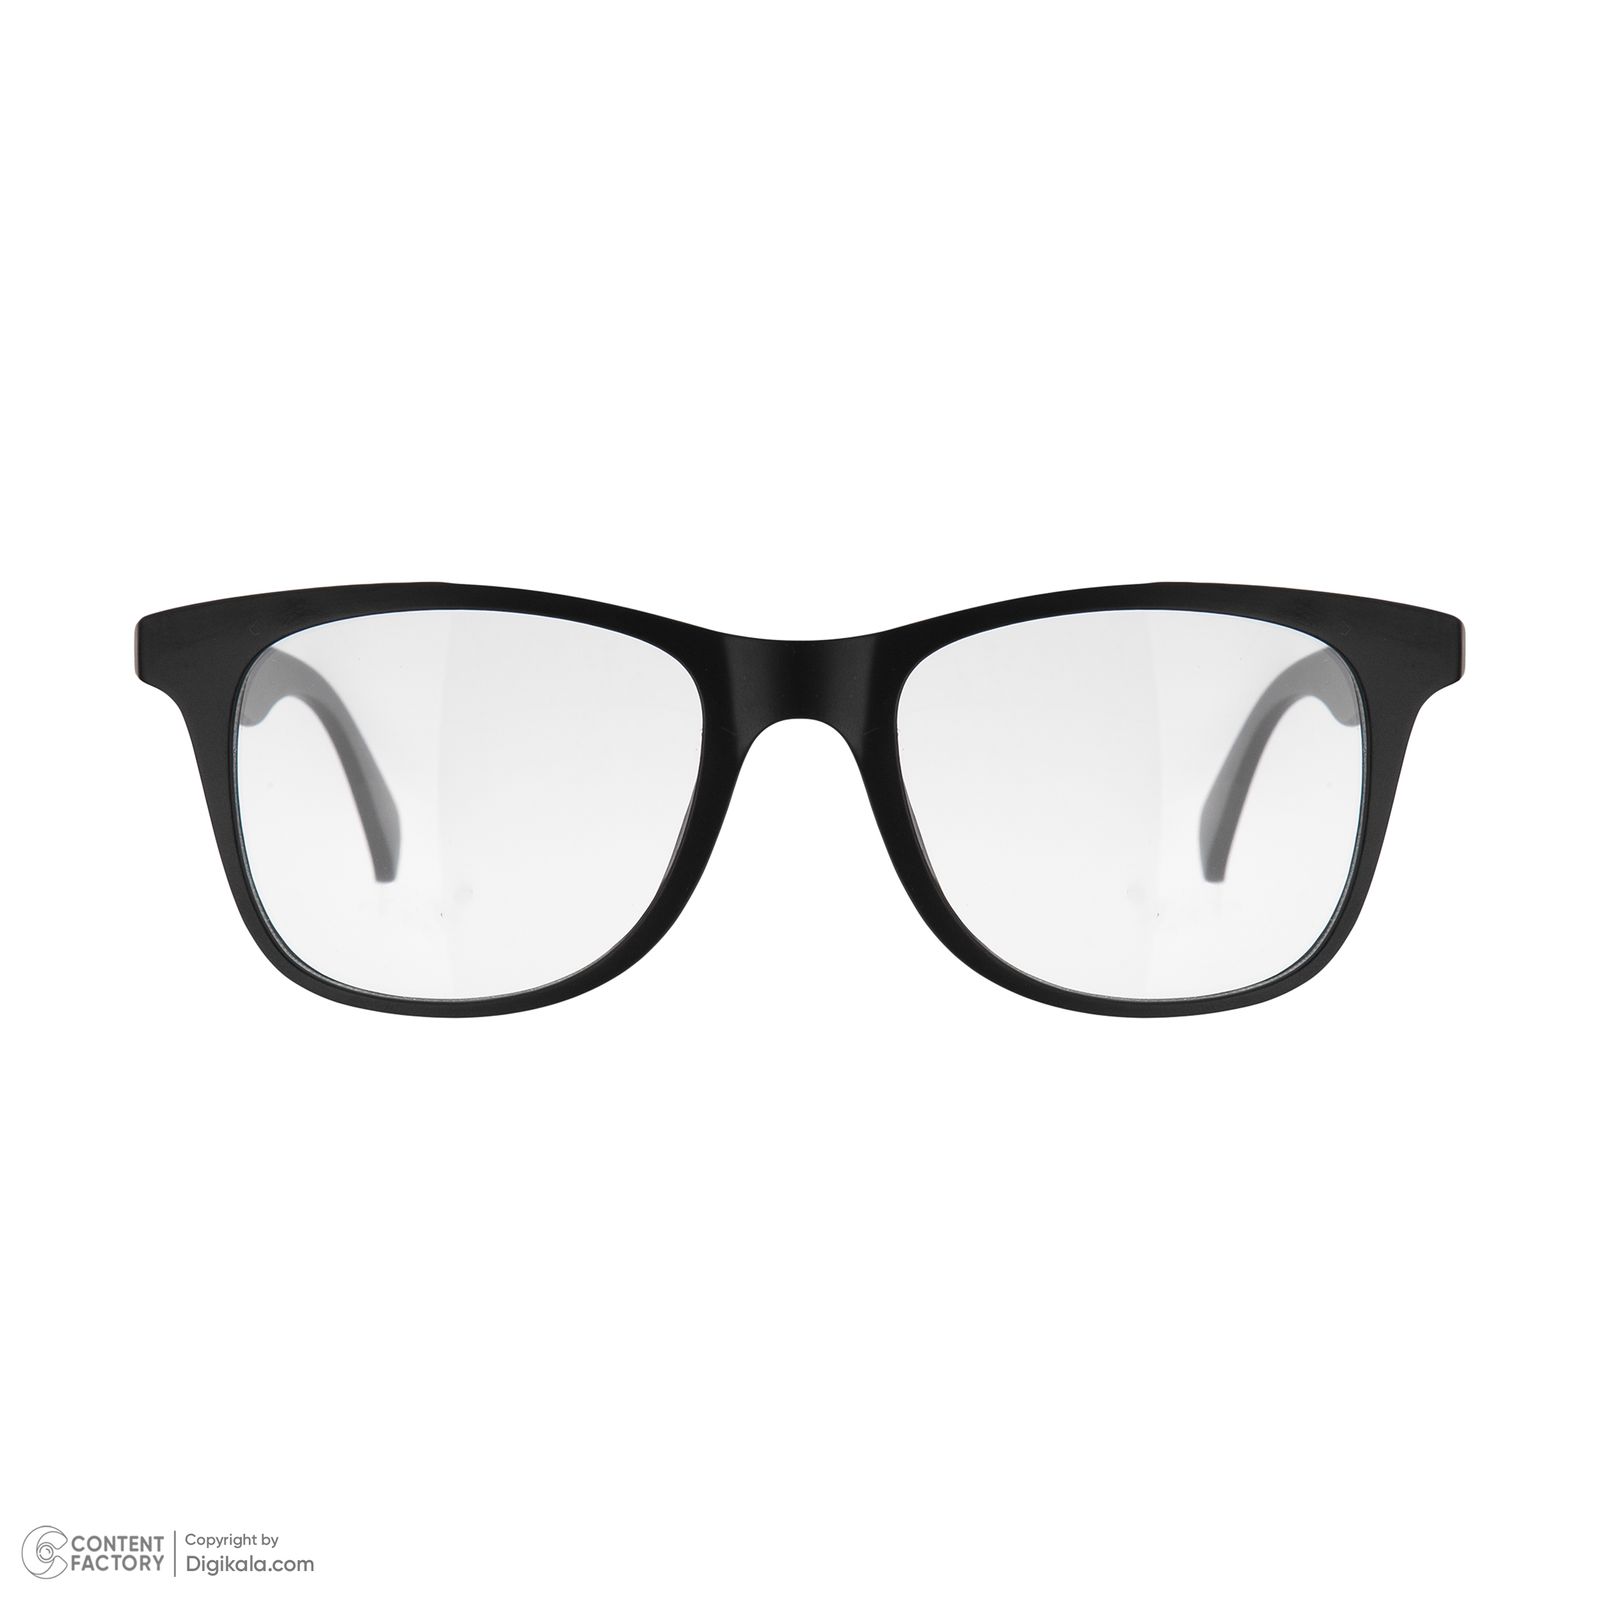 فریم عینک طبی دونیک مدل tr2208-c2 به همراه کاور آفتابی مجموعه 6 عددی -  - 3